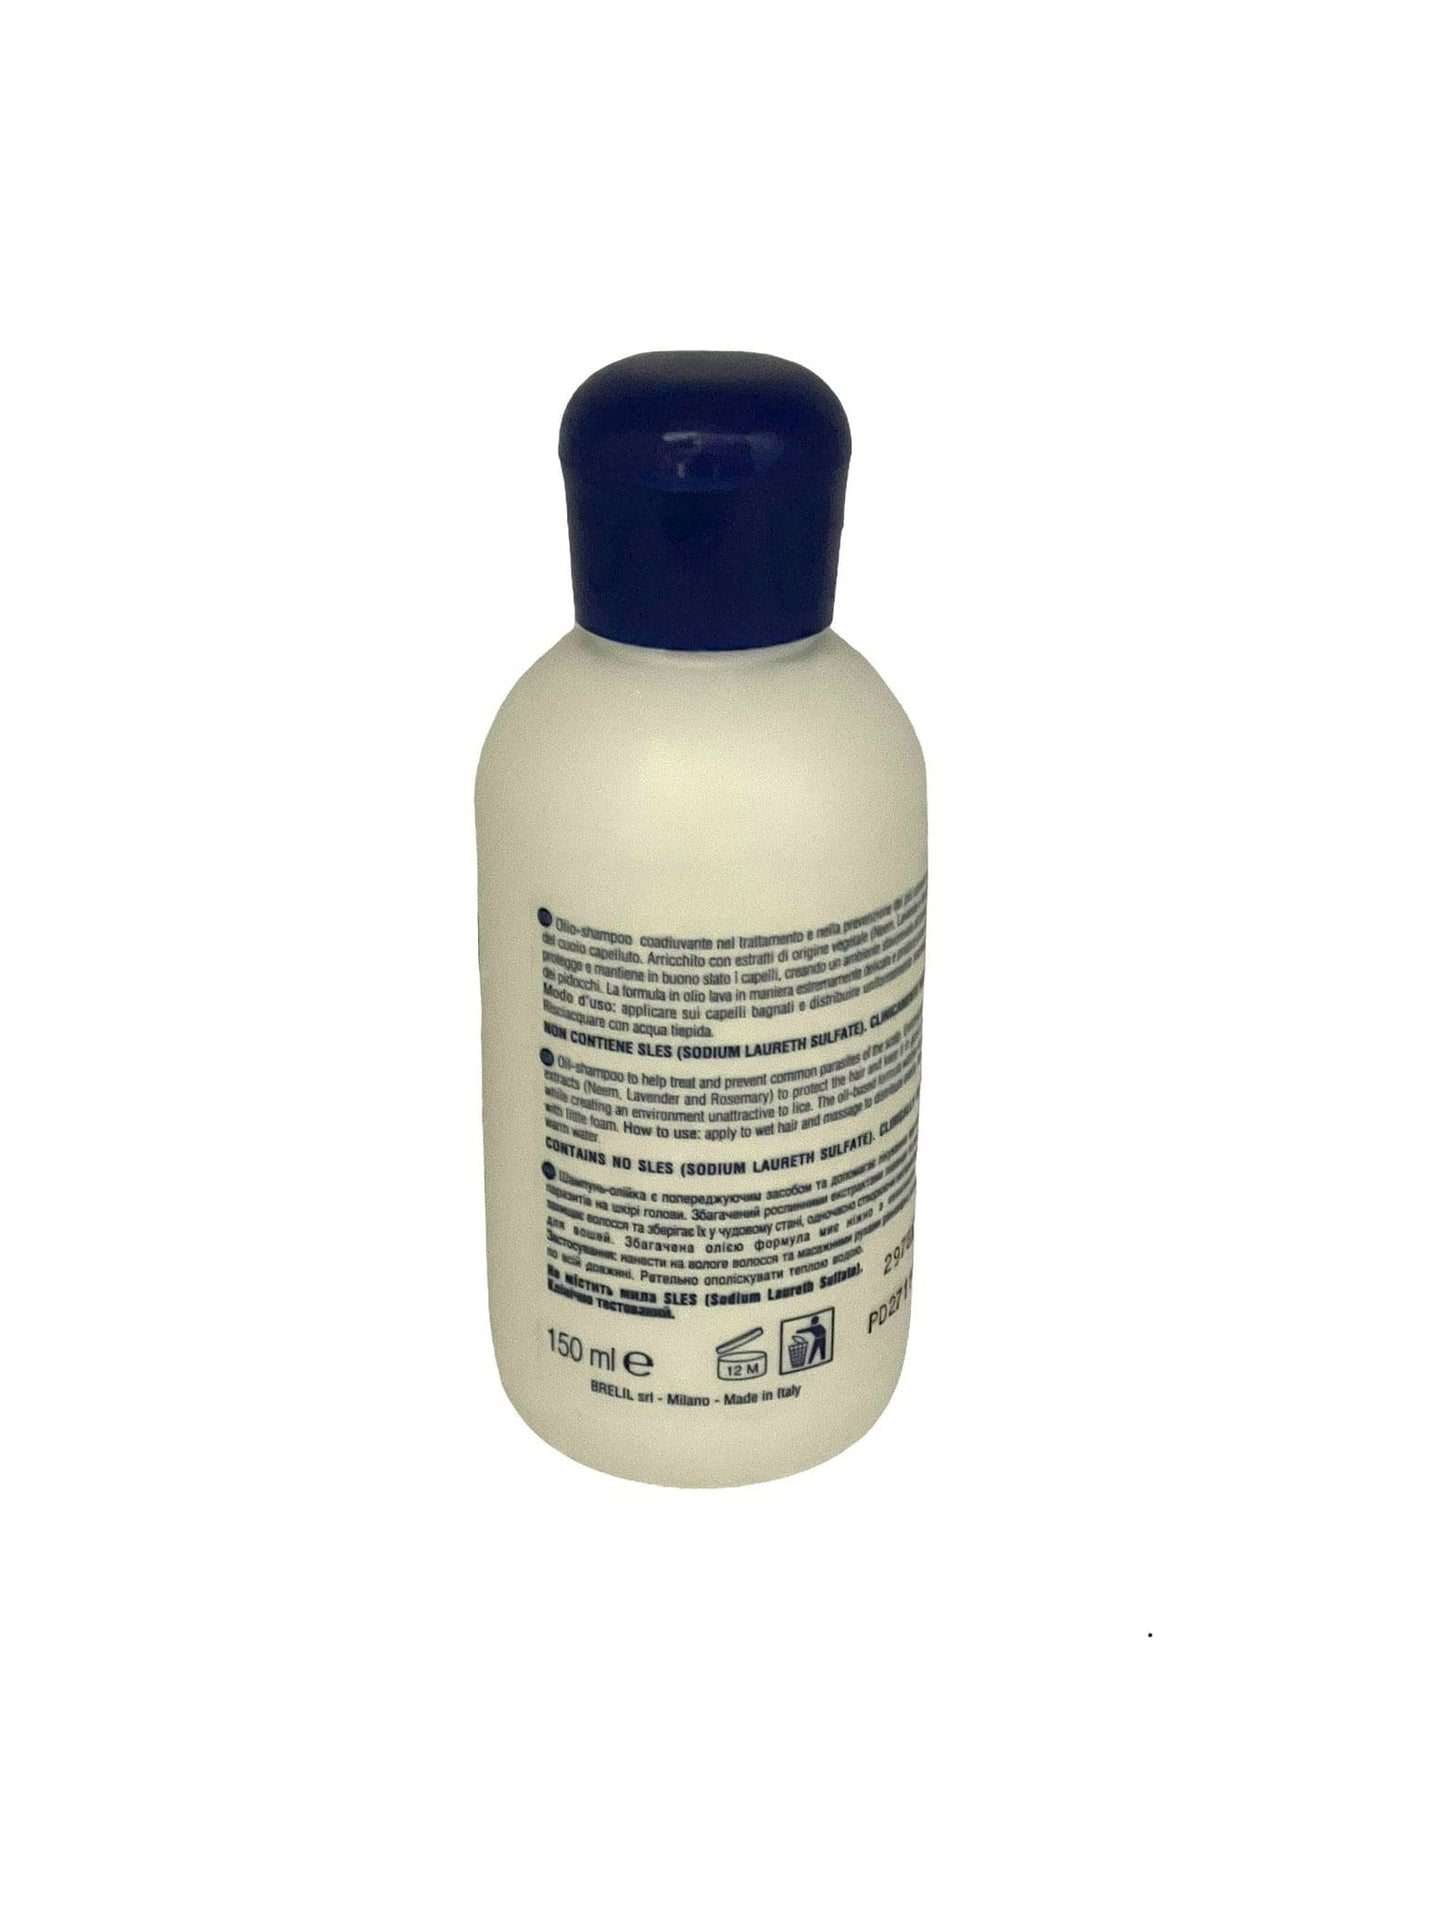 Hair Shampoo 014 Anti-Lice Oil Shampoo Prevention 5.07oz/150ml Hair Shampoo